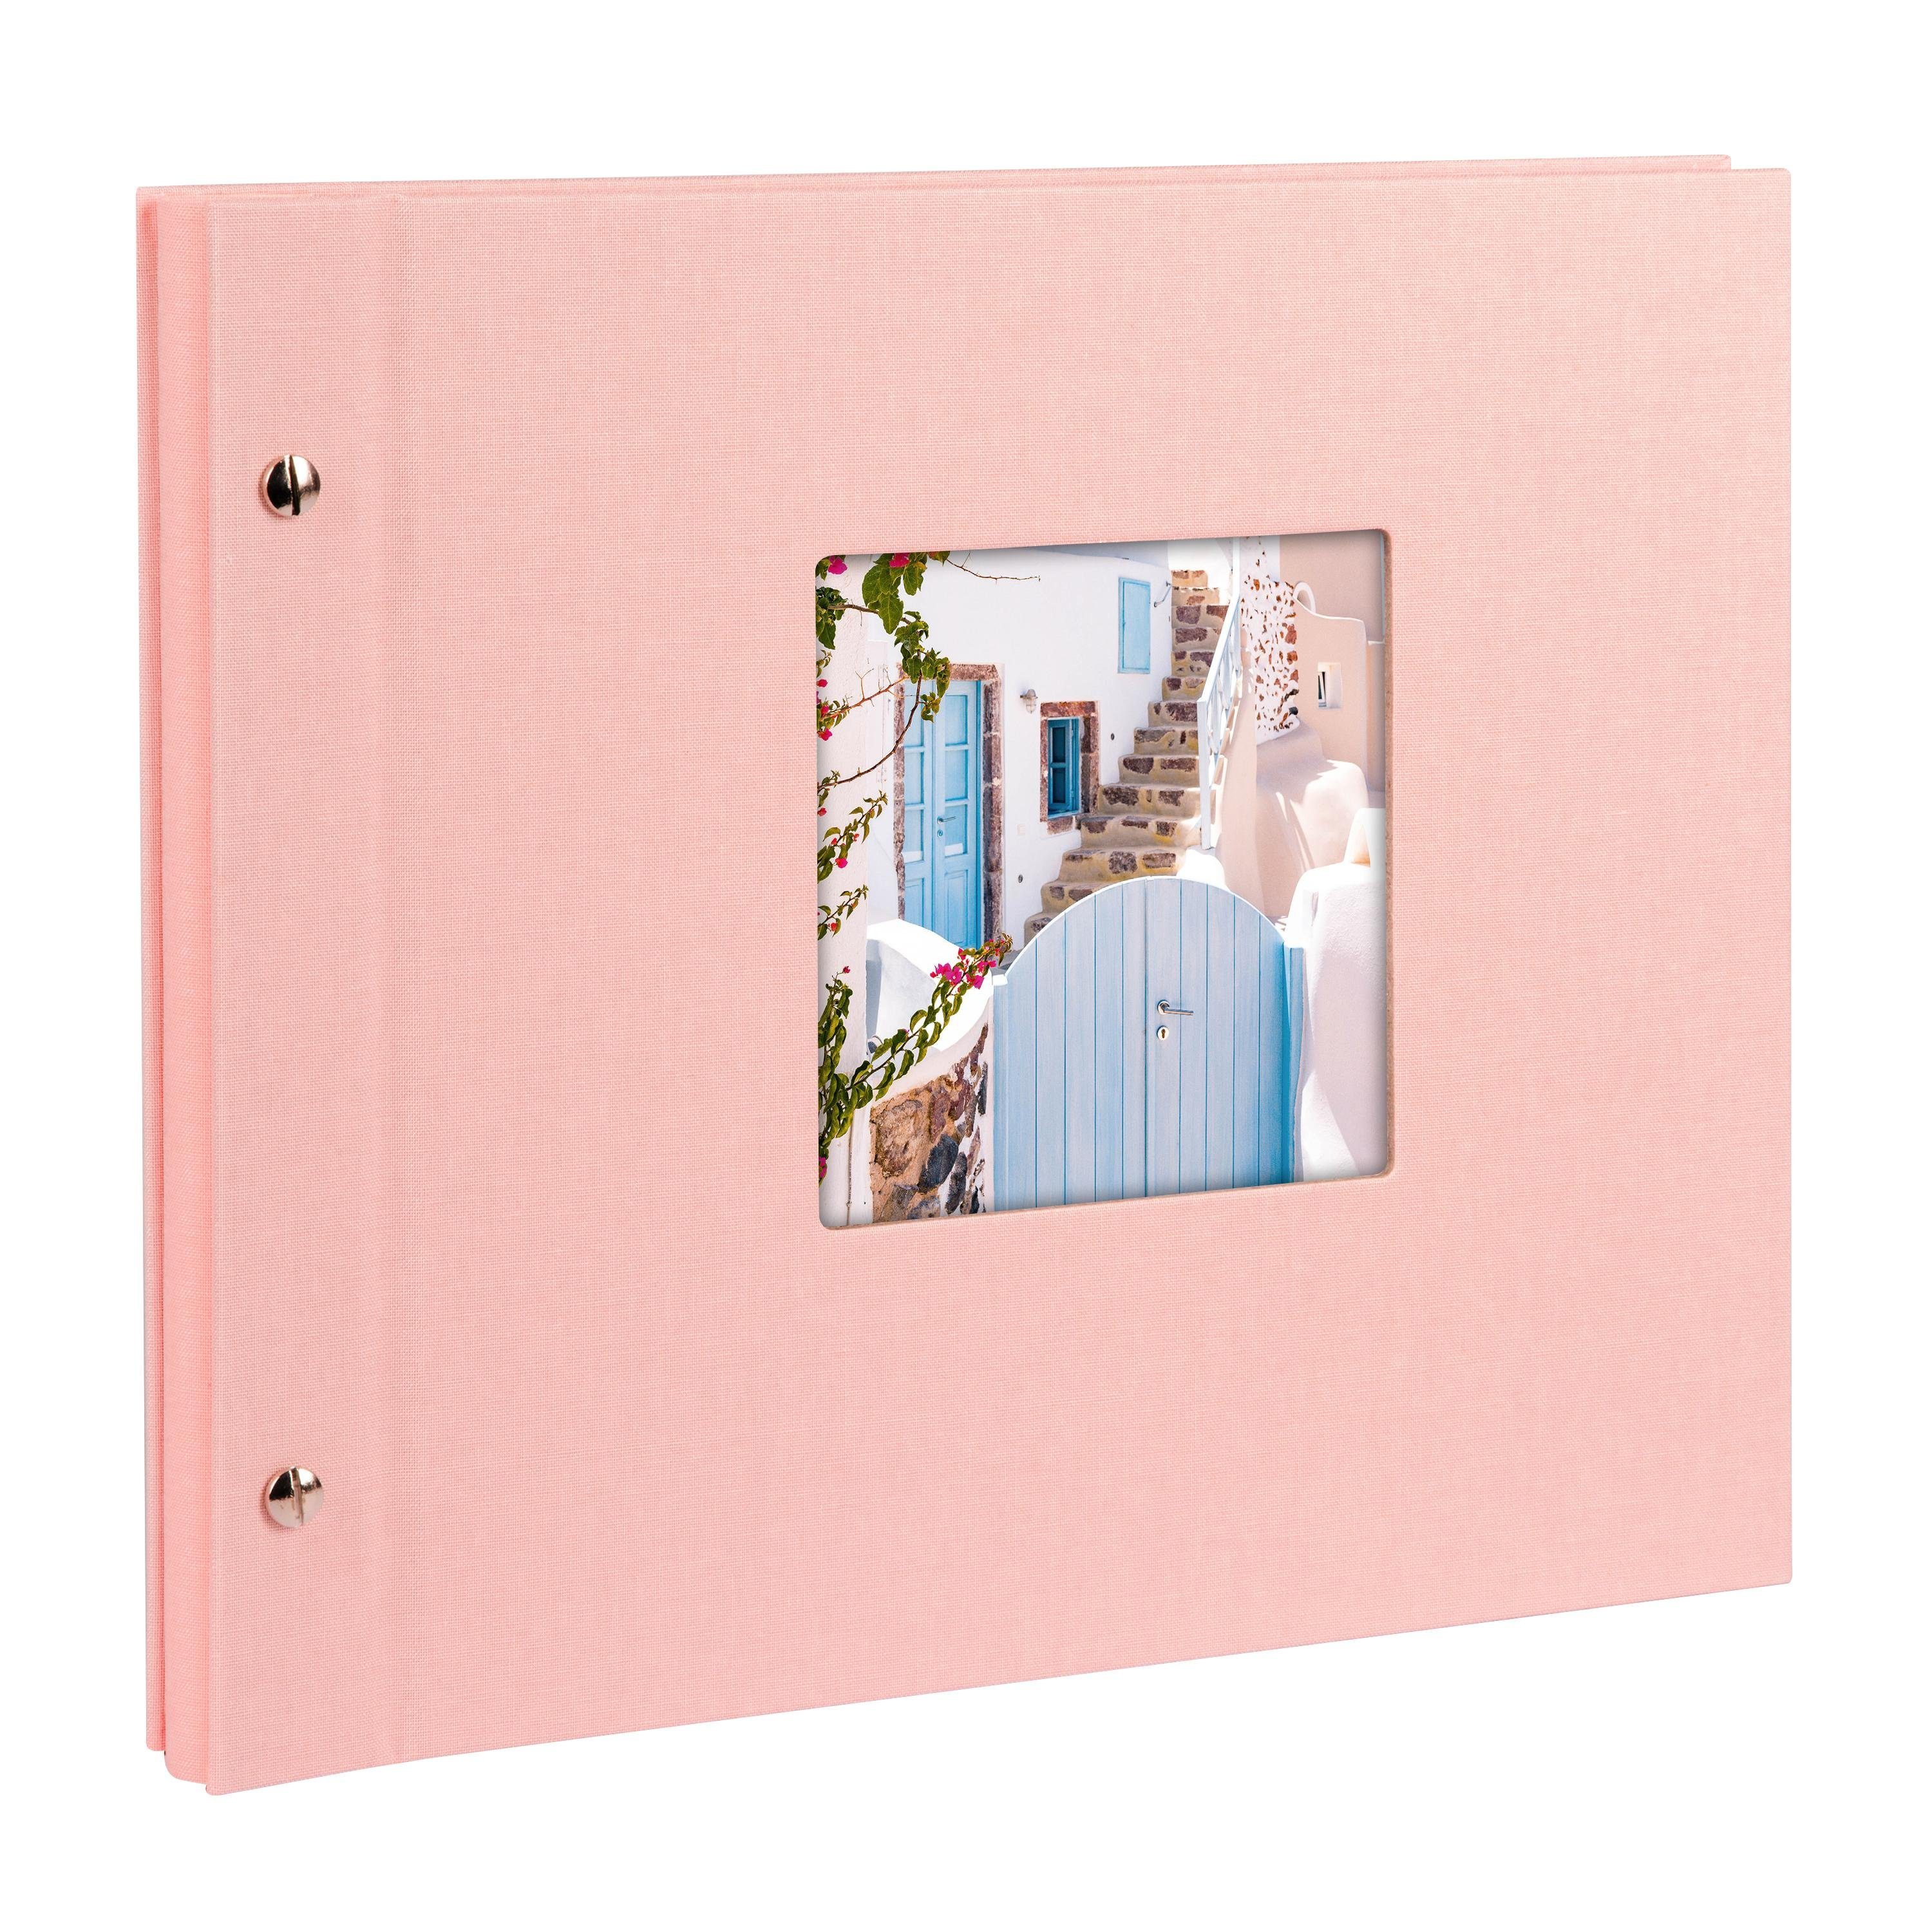 Goldbuch Fotoalbum Schraubalbum 26822 Bella Vista 30x25cm rosé | Fotoalben